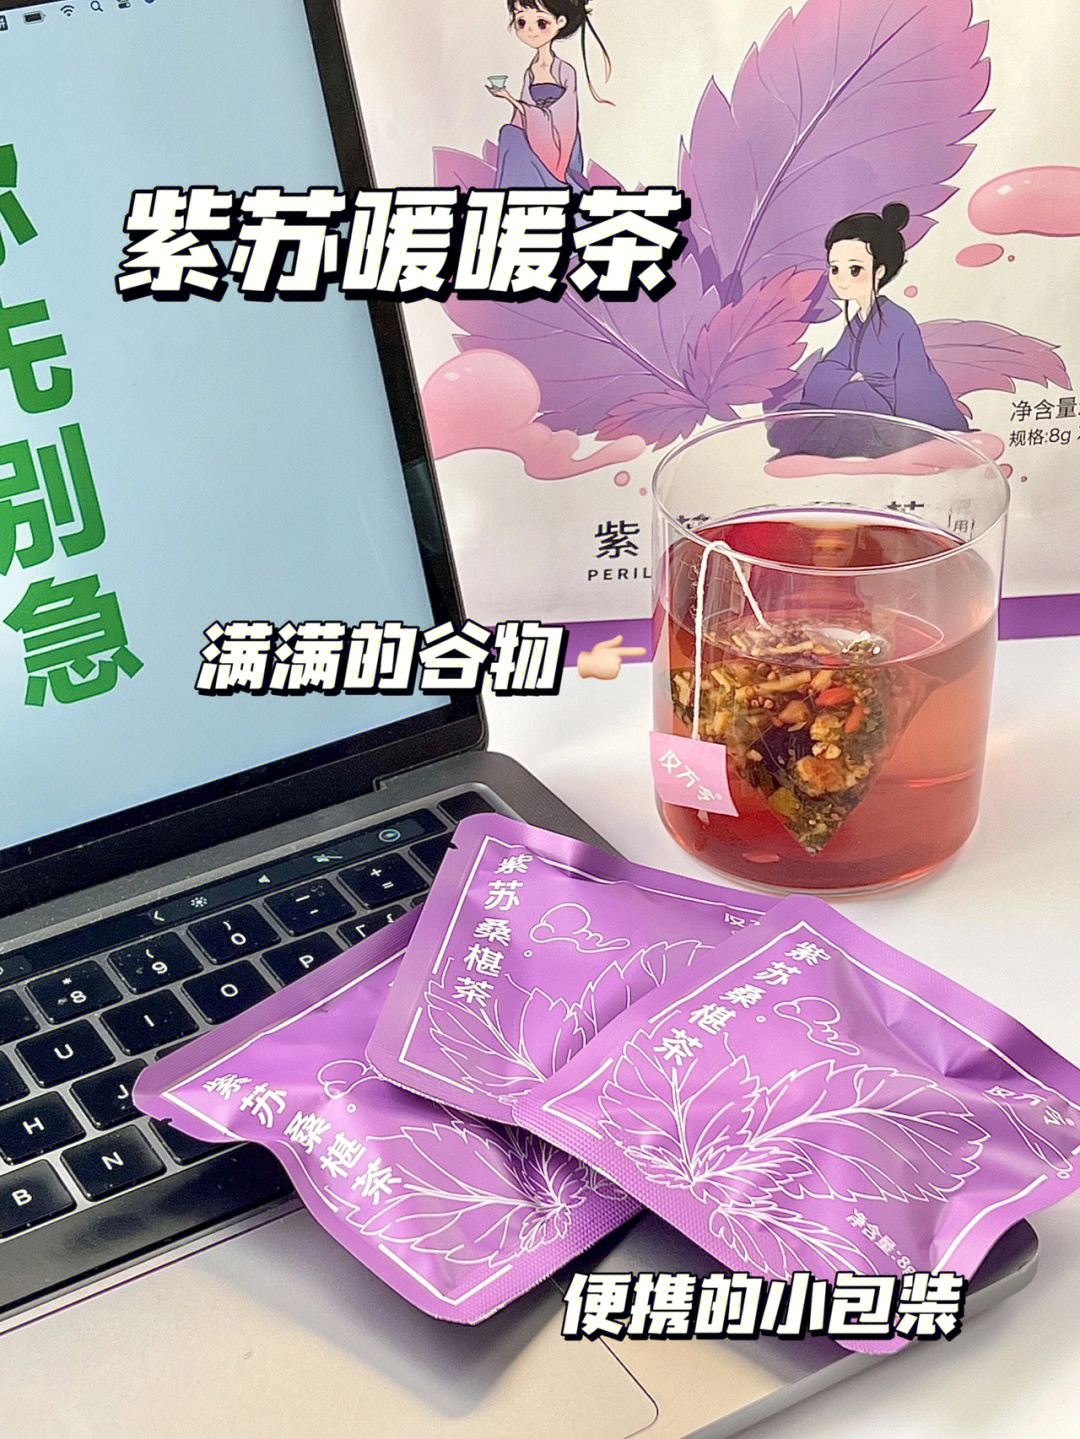 身体也胀胀的03最近被办公室的姐妹安利了一款紫苏桑椹茶